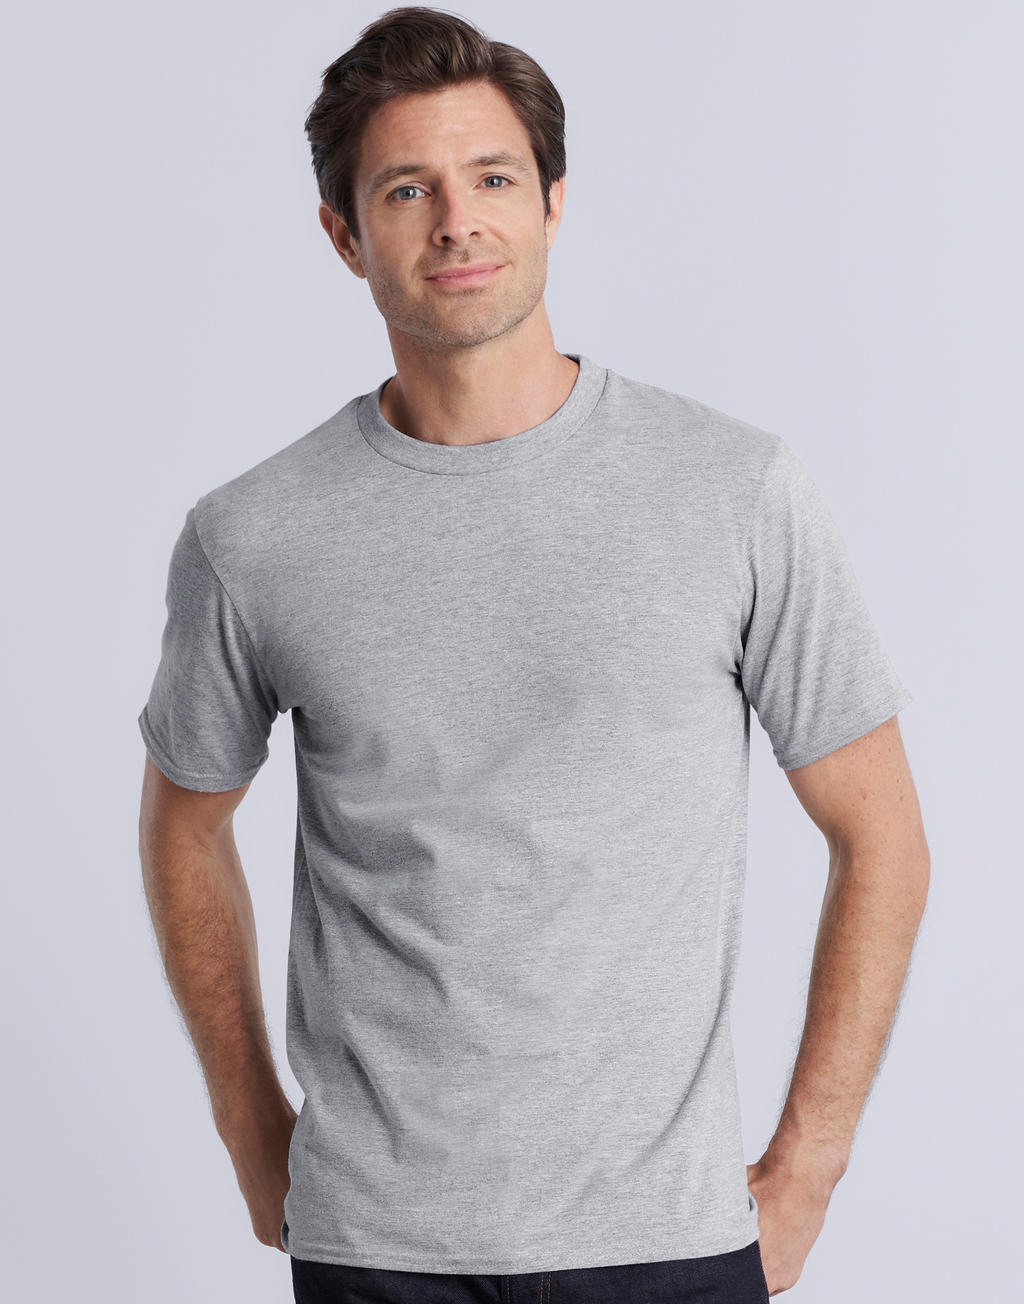 Premium Cotton Adult T-Shirt